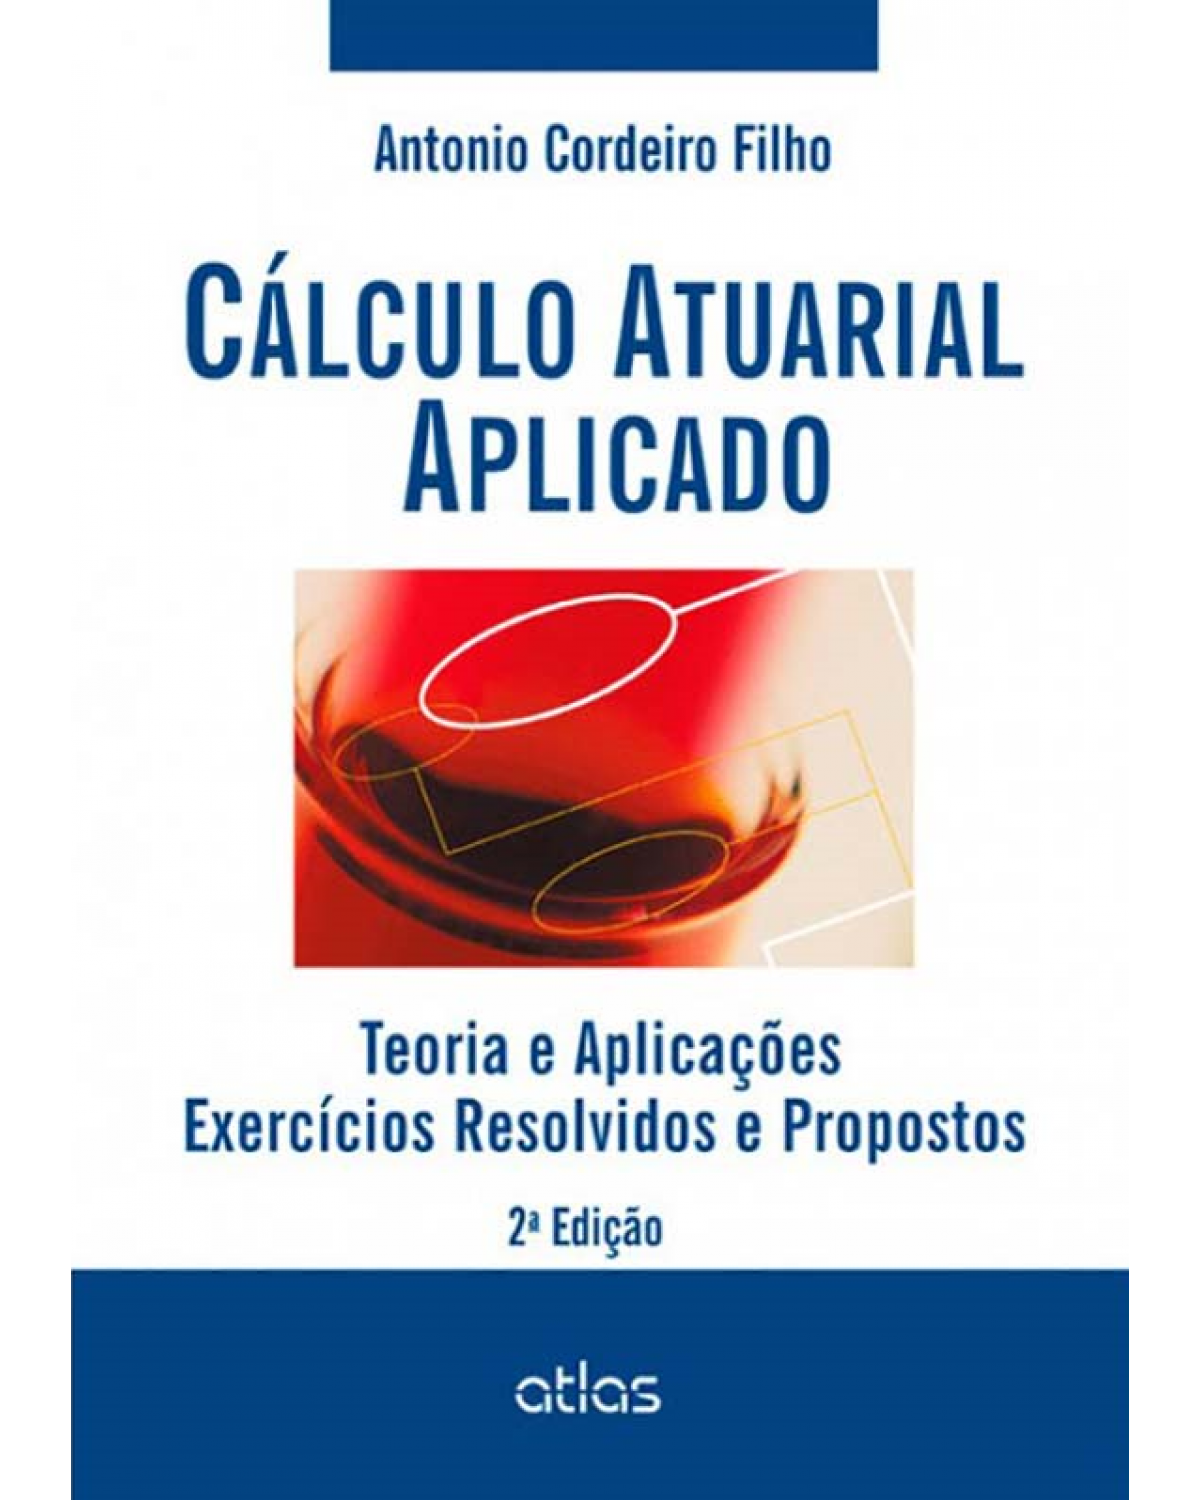 Cálculo atuarial aplicado - Teoria e aplicações - Exercícios resolvidos e propostos - 2ª Edição | 2014